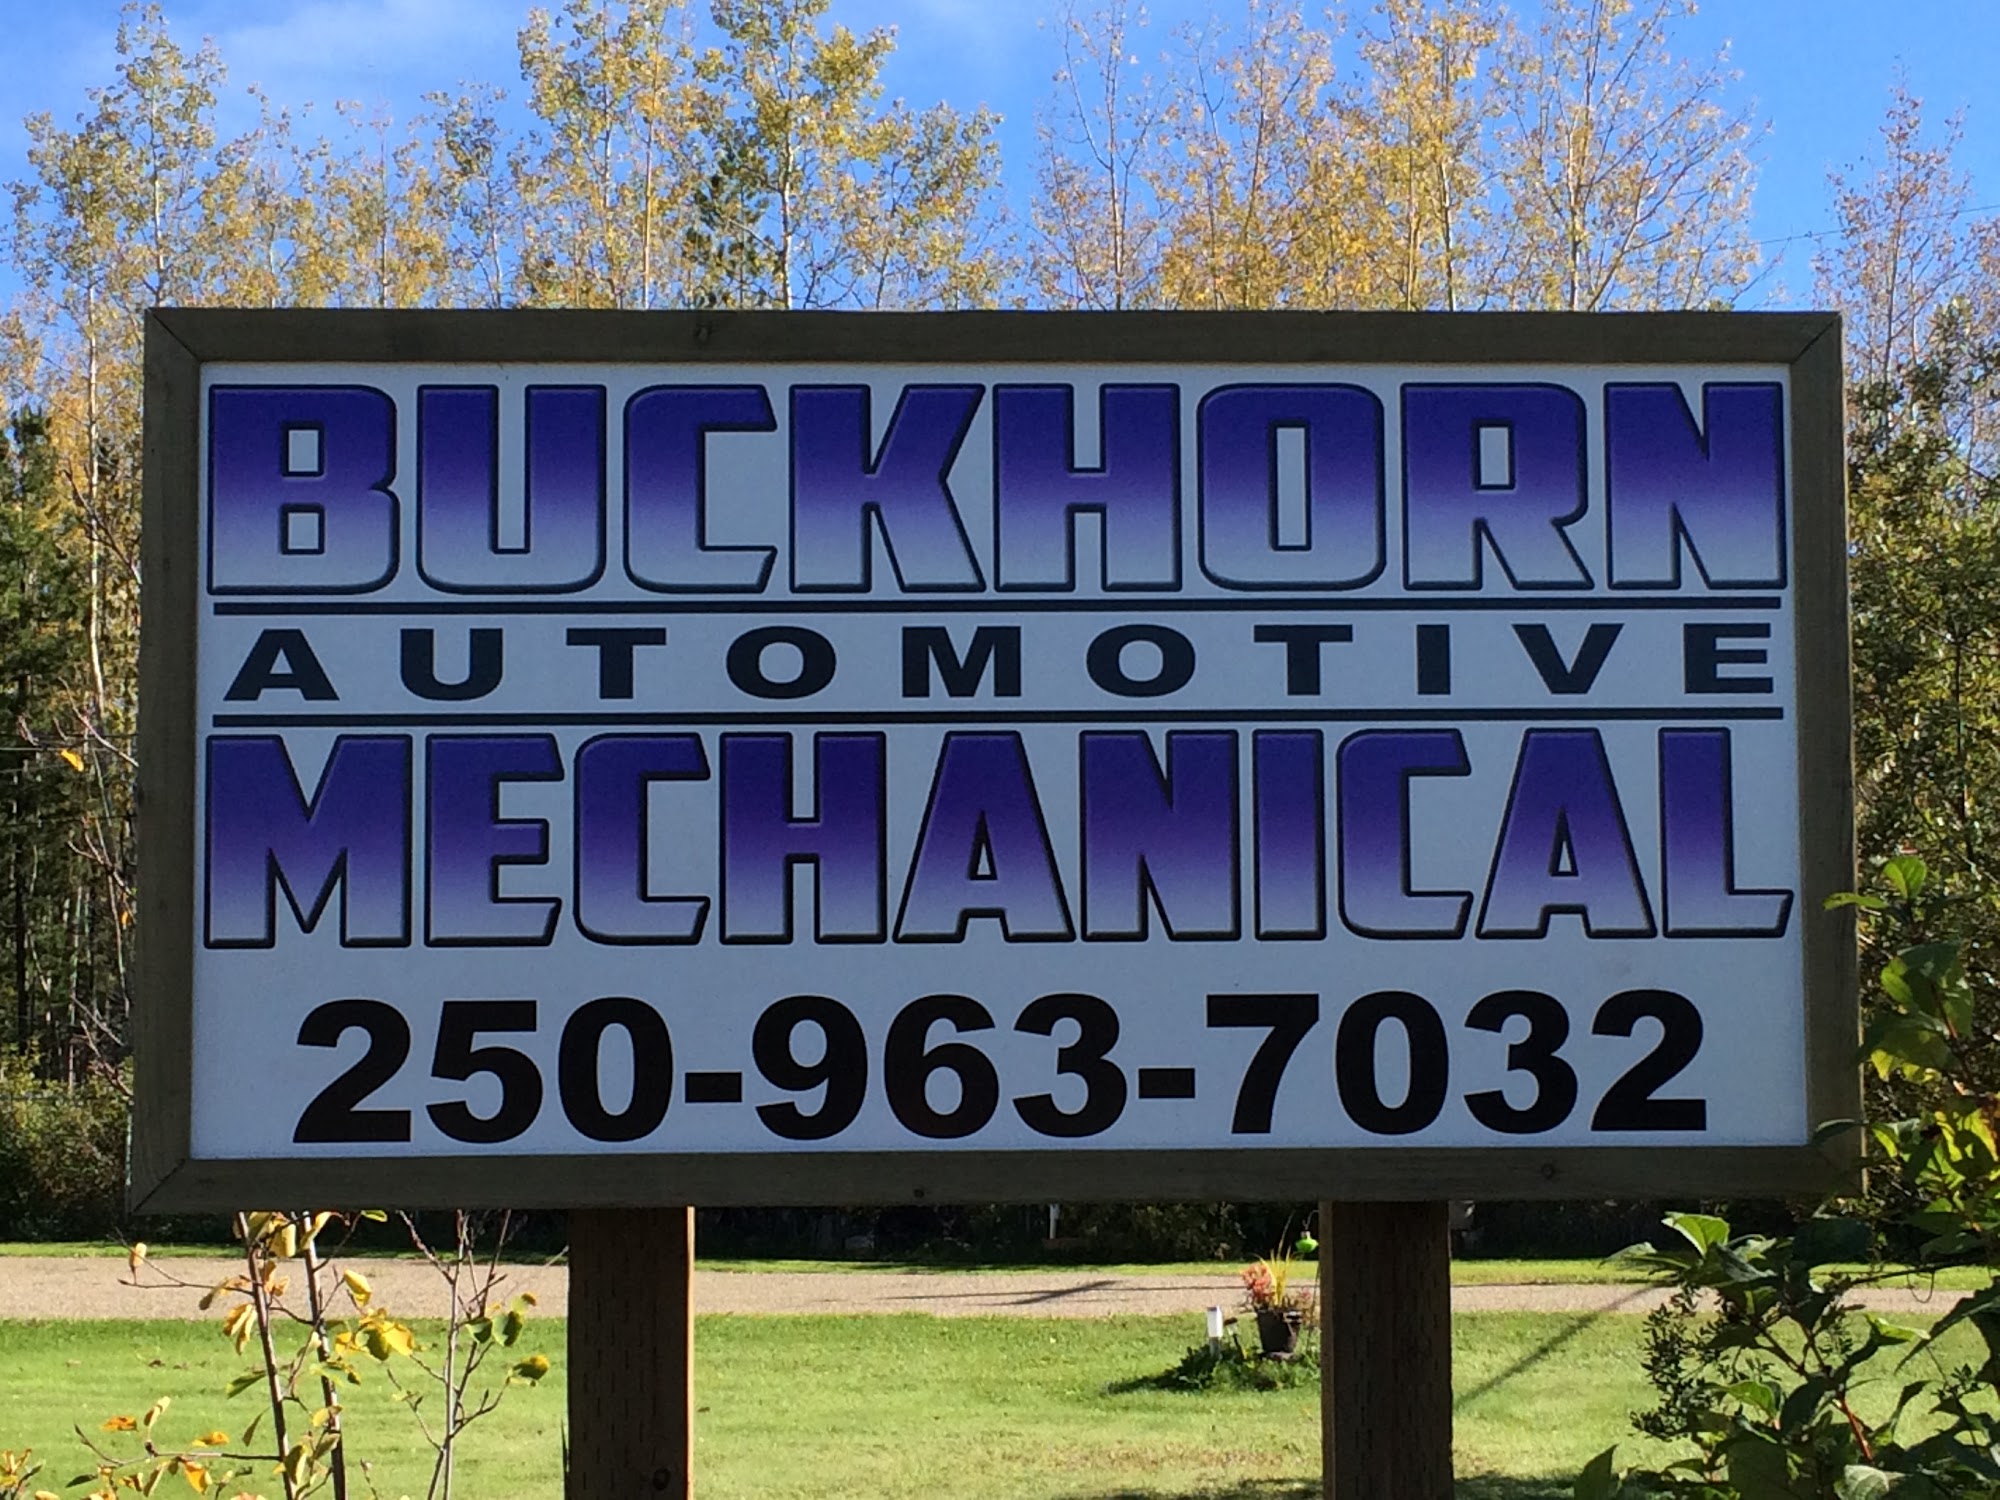 Buckhorn Automotive Mechanical